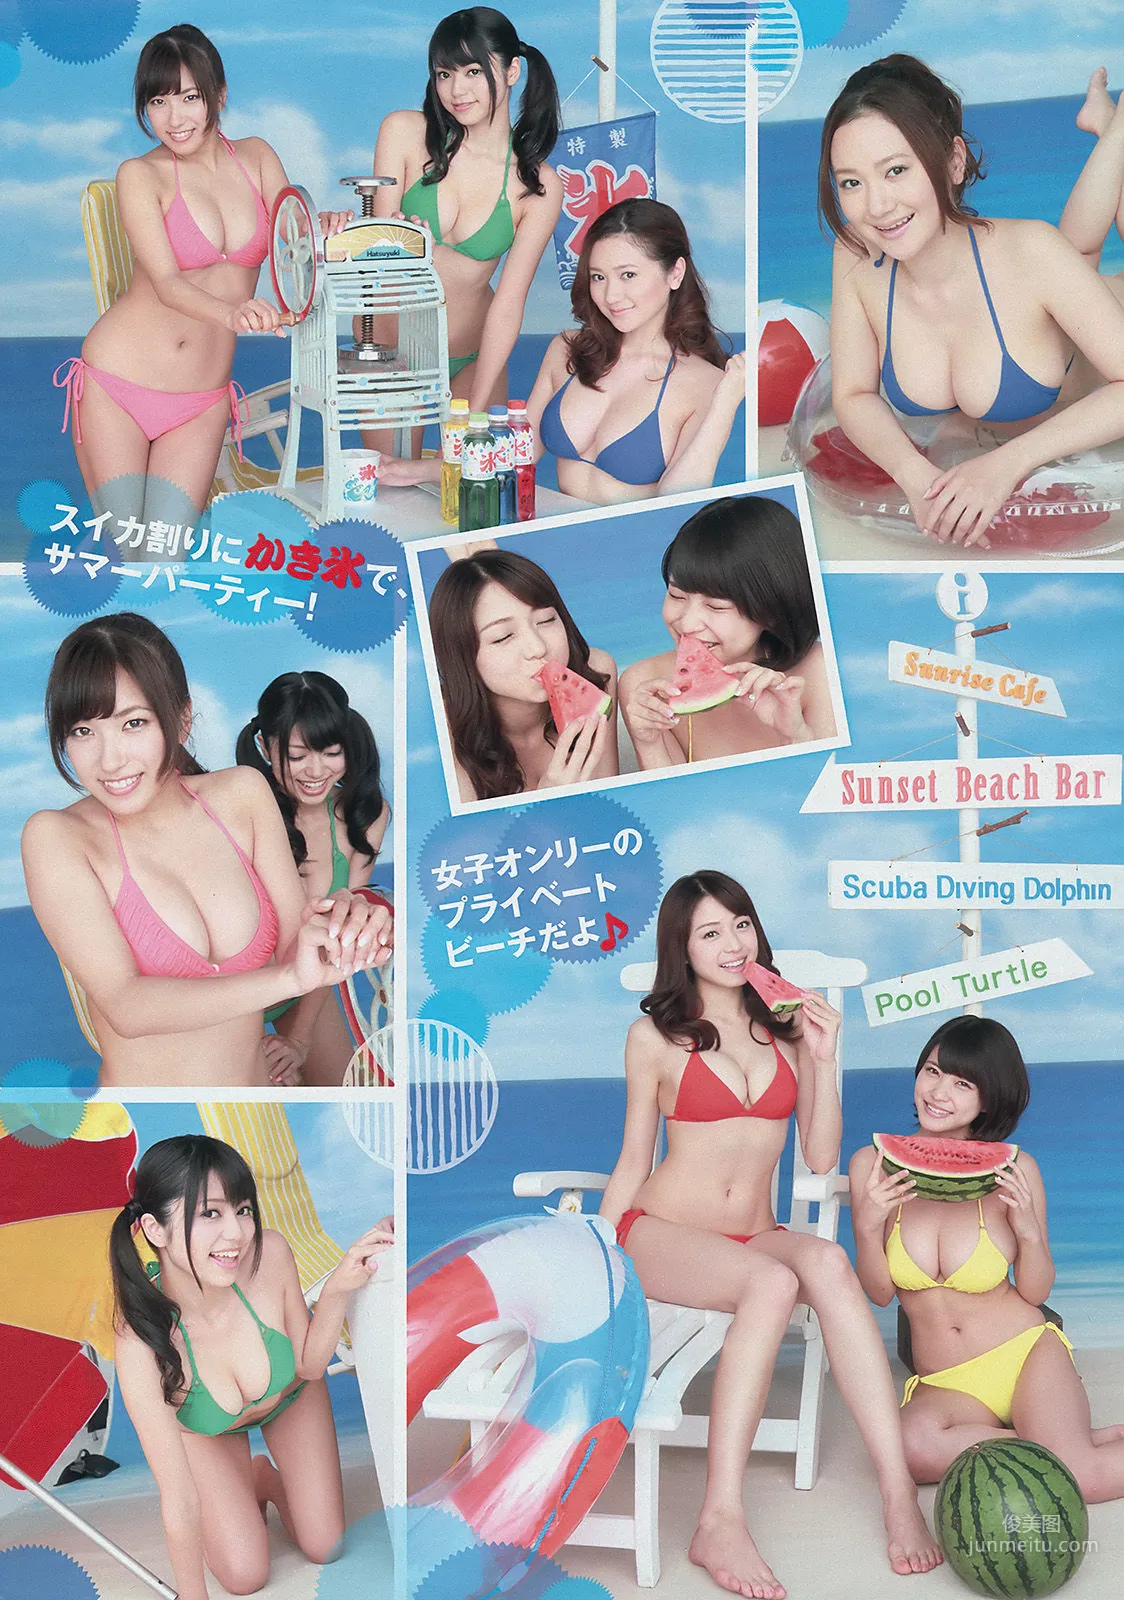 [Young Magazine] 中村静香 さいとうまりな 2014年No.36-37 写真杂志5